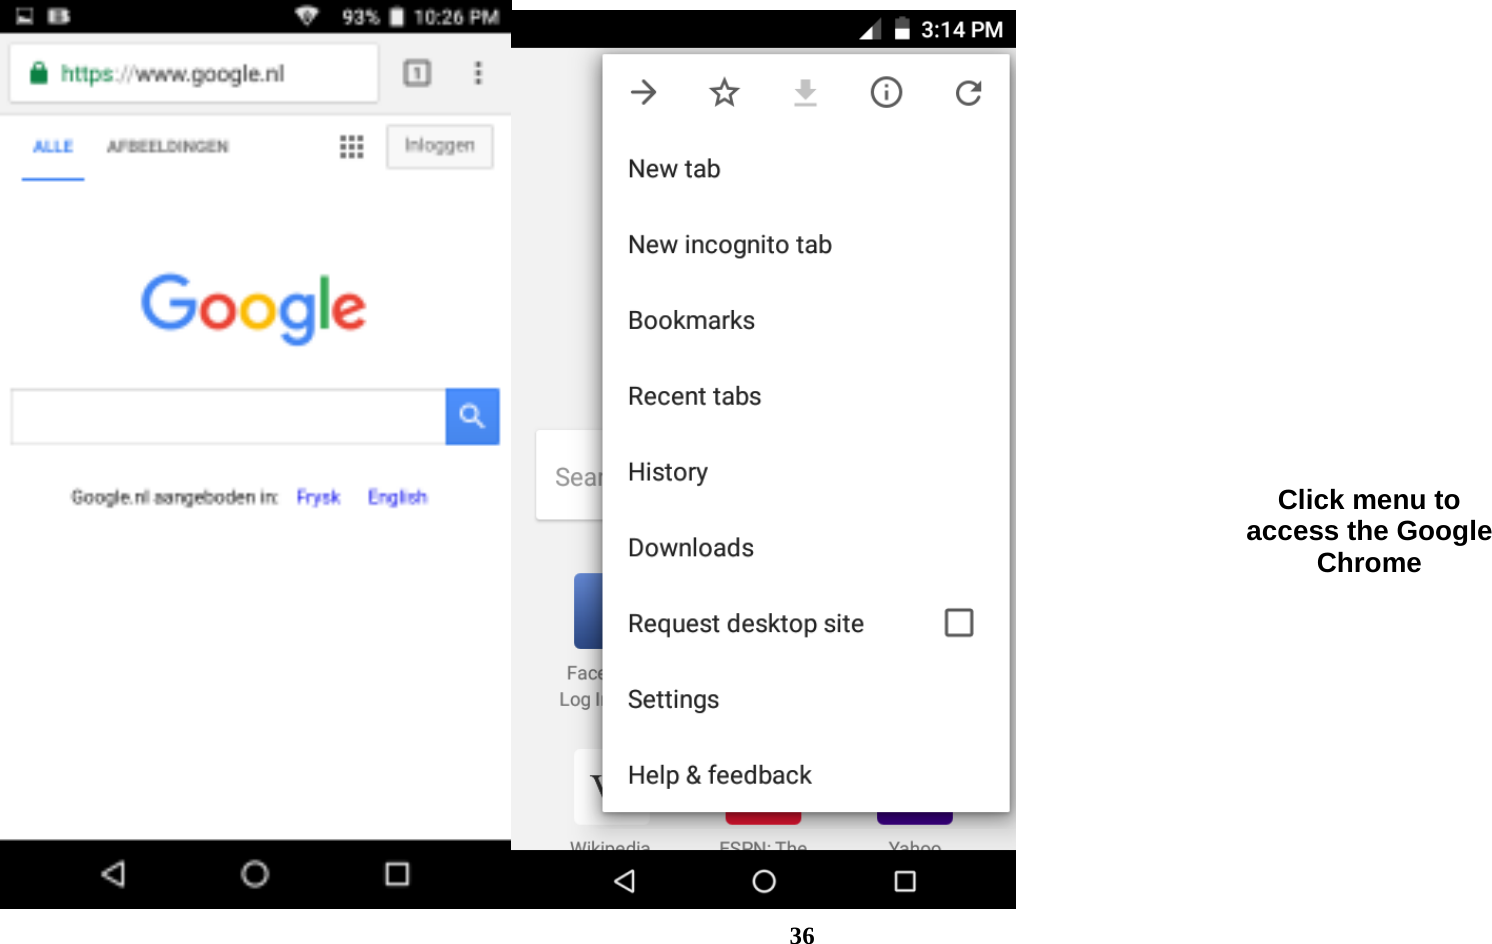  36  Click menu to access the Google Chrome 